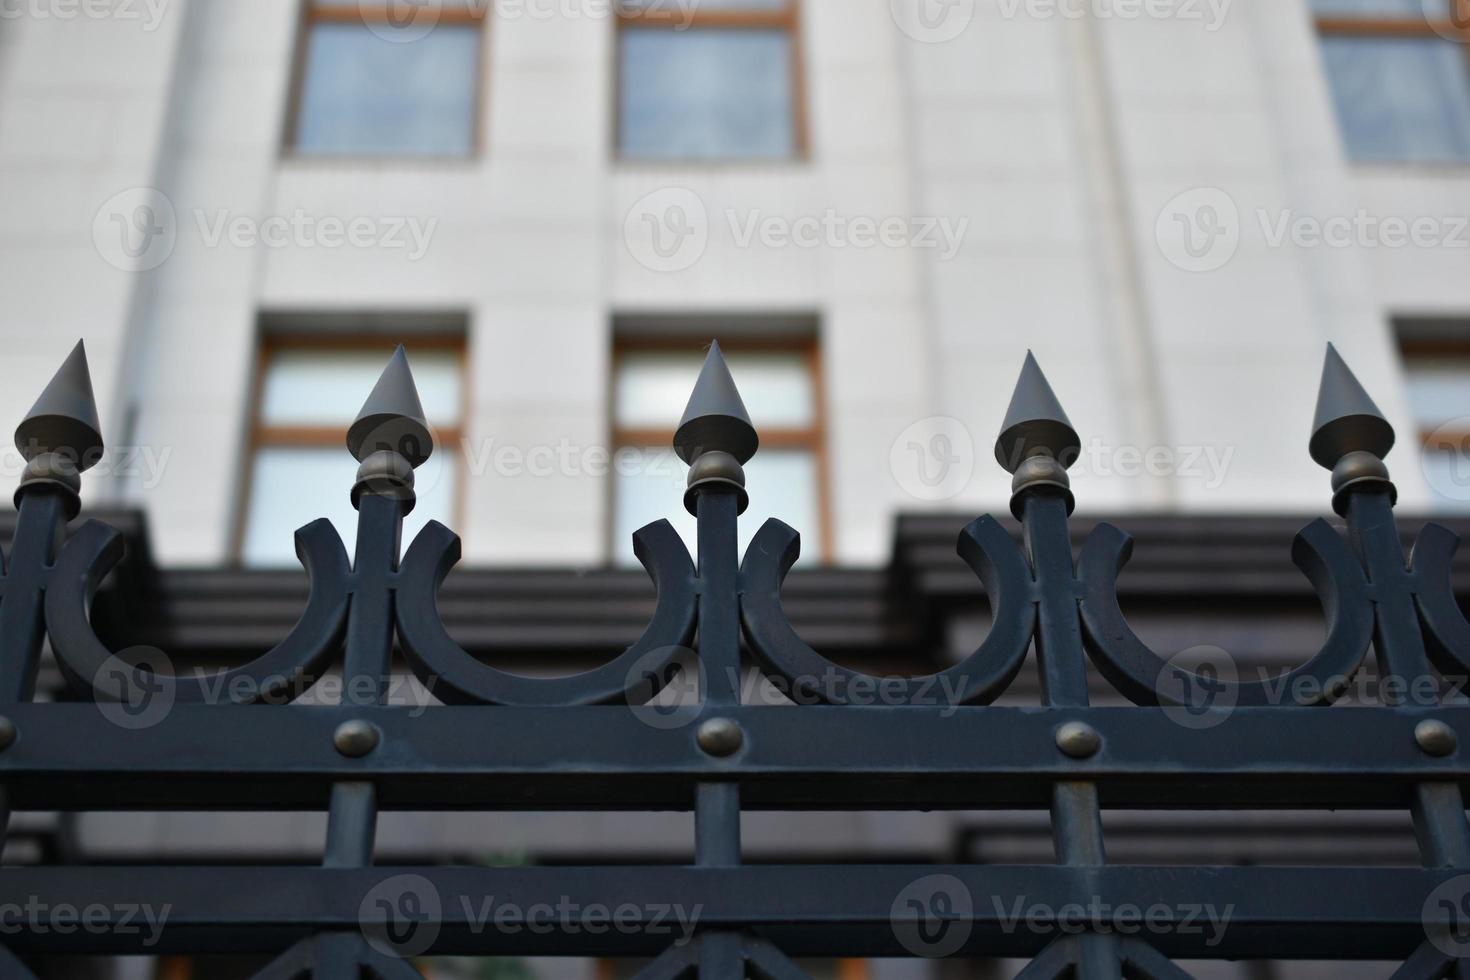 de ijzeren omheining van het regeringsgebouw in het park Rusland. ijzeren pinnen op het hek. foto